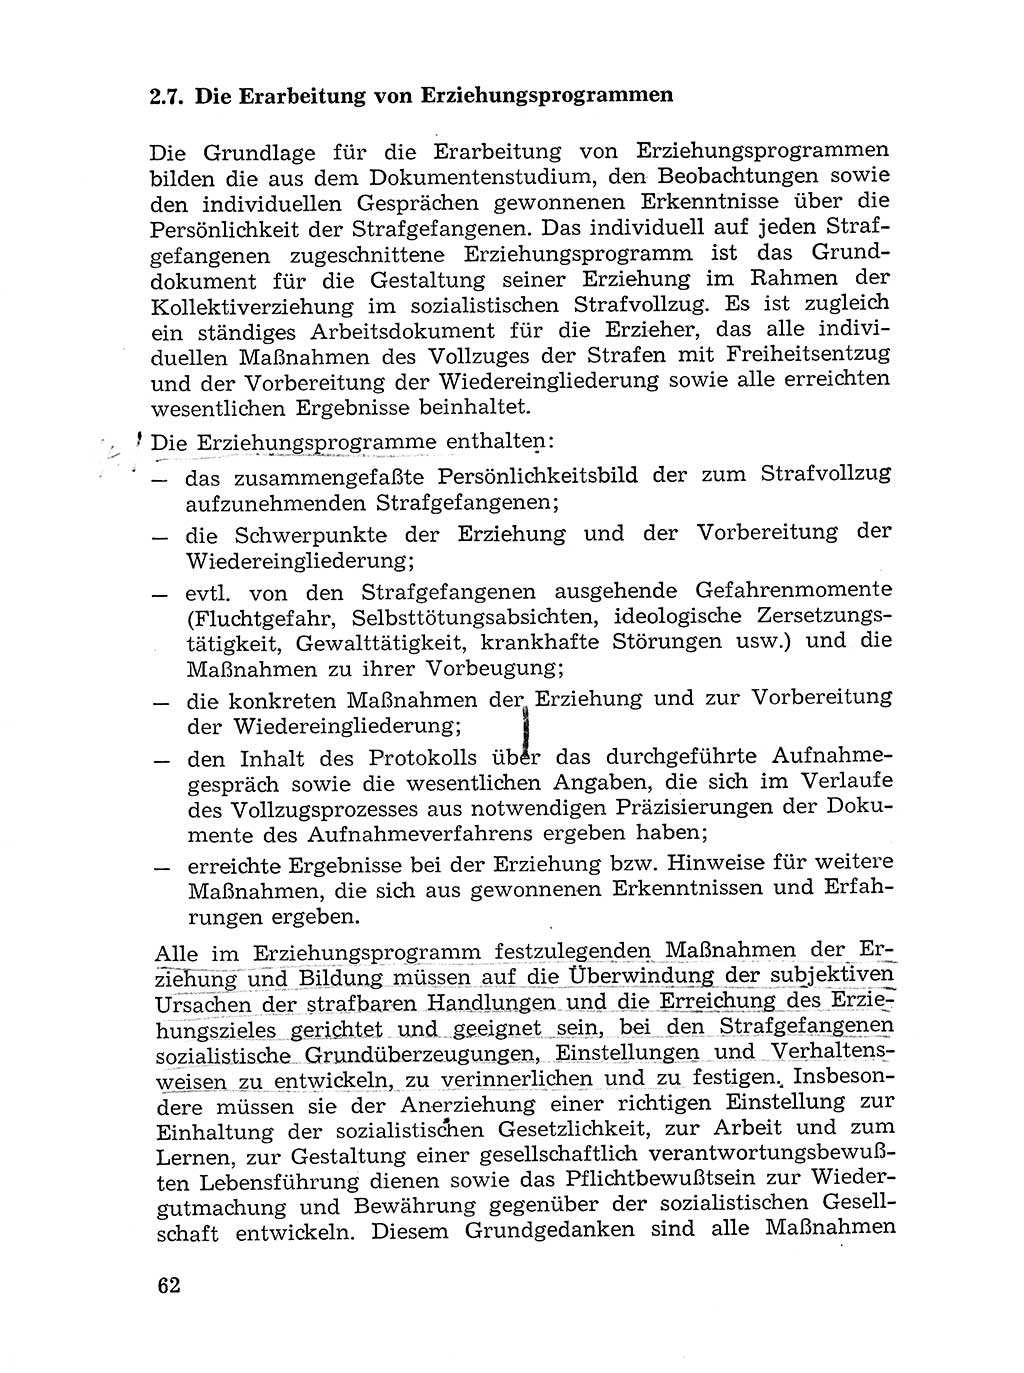 Sozialistischer Strafvollzug (SV) [Deutsche Demokratische Republik (DDR)] 1972, Seite 62 (Soz. SV DDR 1972, S. 62)